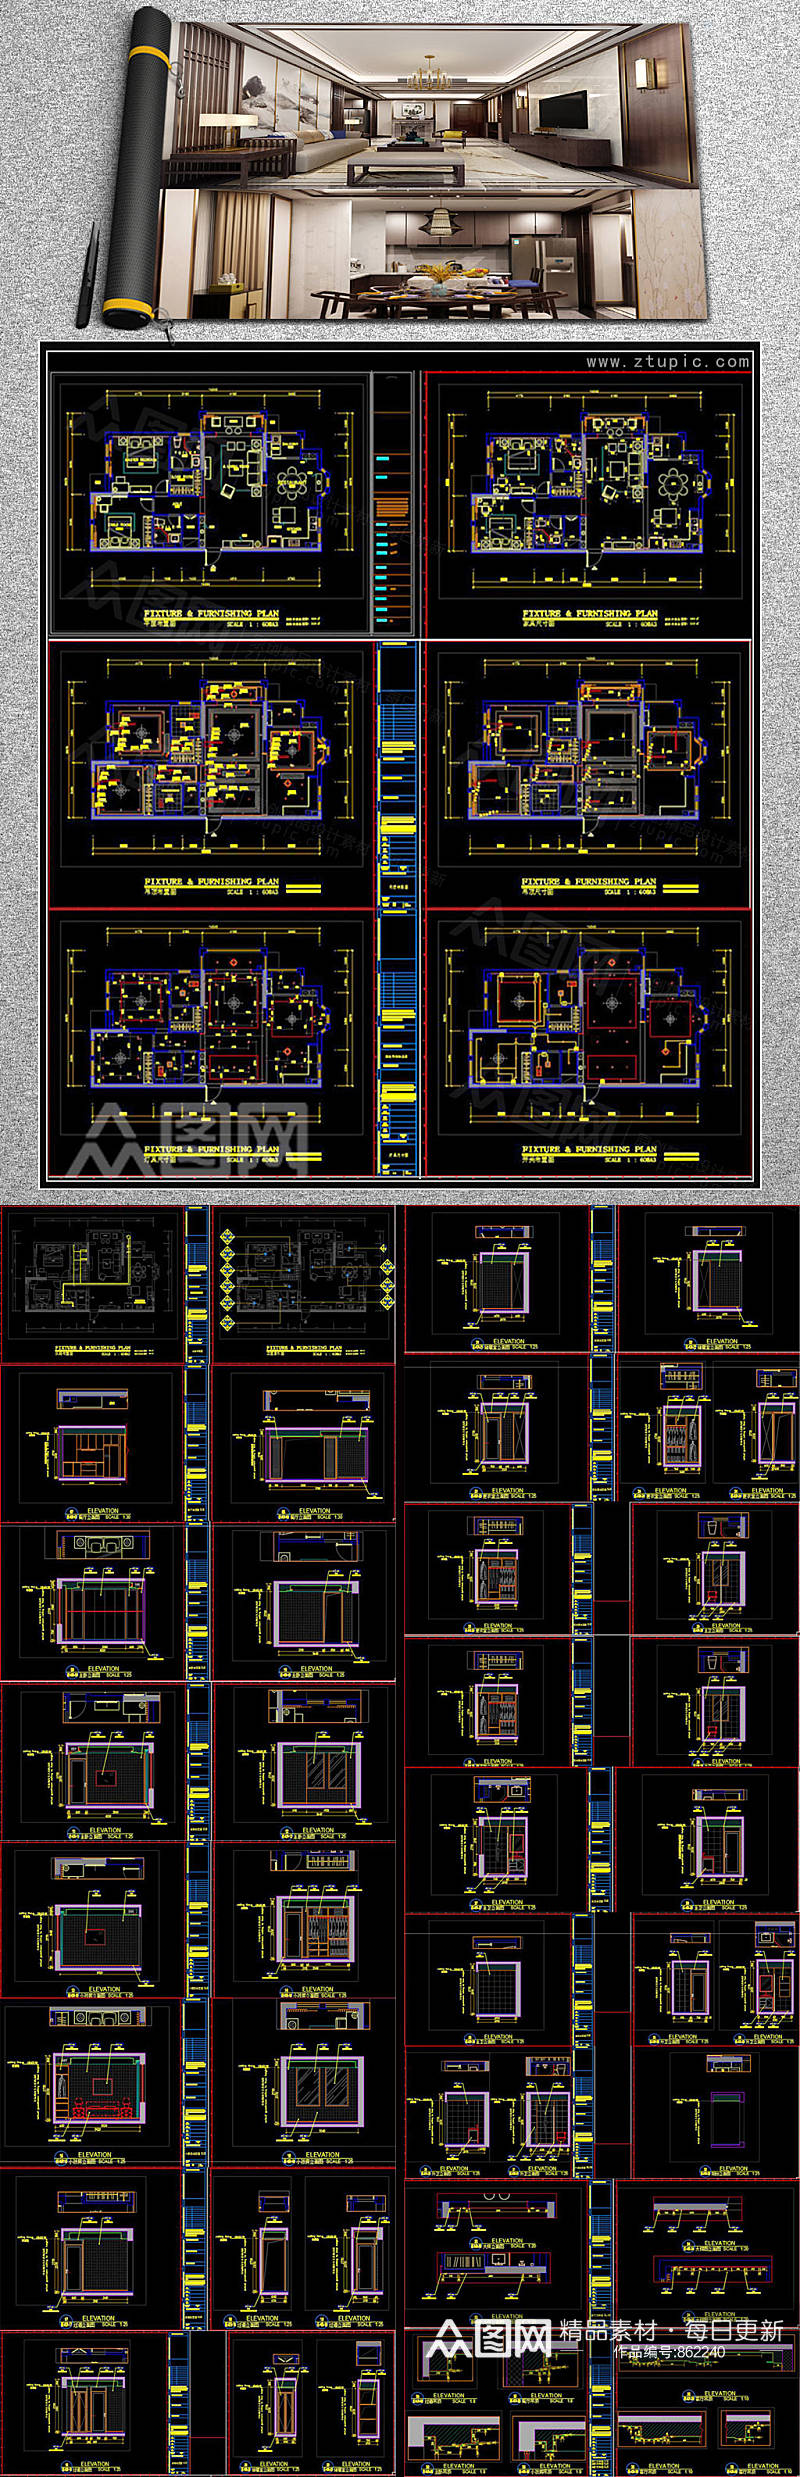 新中式家装样板房施工图CAD素材素材